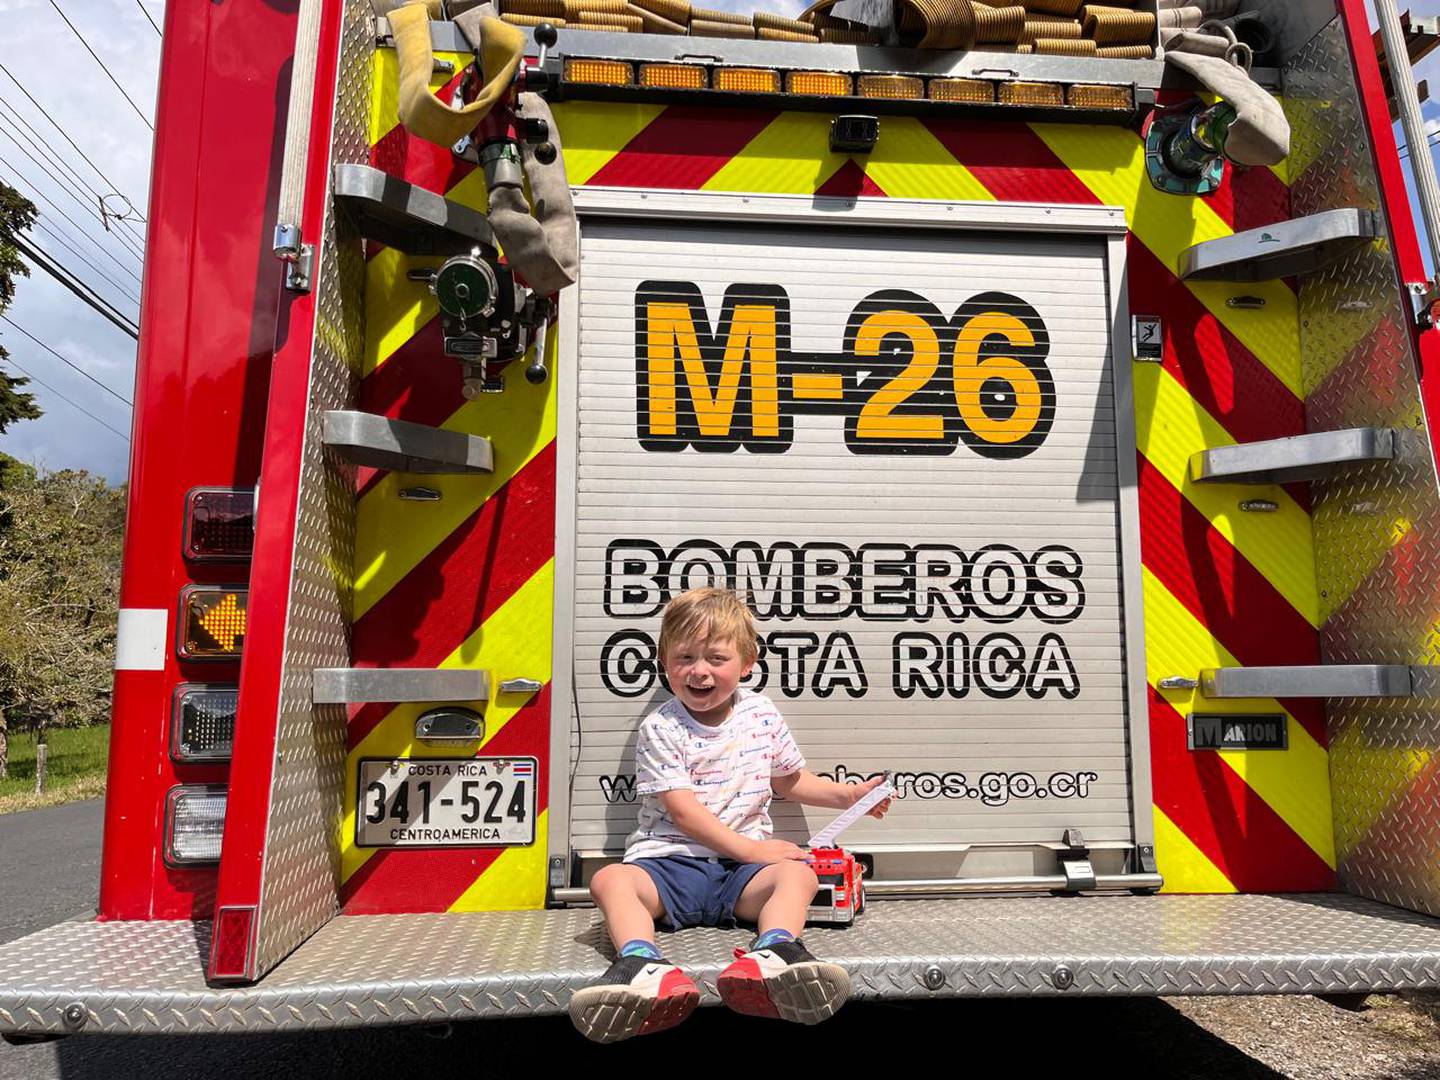 José Miguel Marín es un niño de 5 años que necesita ser operado en Barcelona, España y por eso, su familia está buscando ayuda para recoger una importante cantidad de dinero.